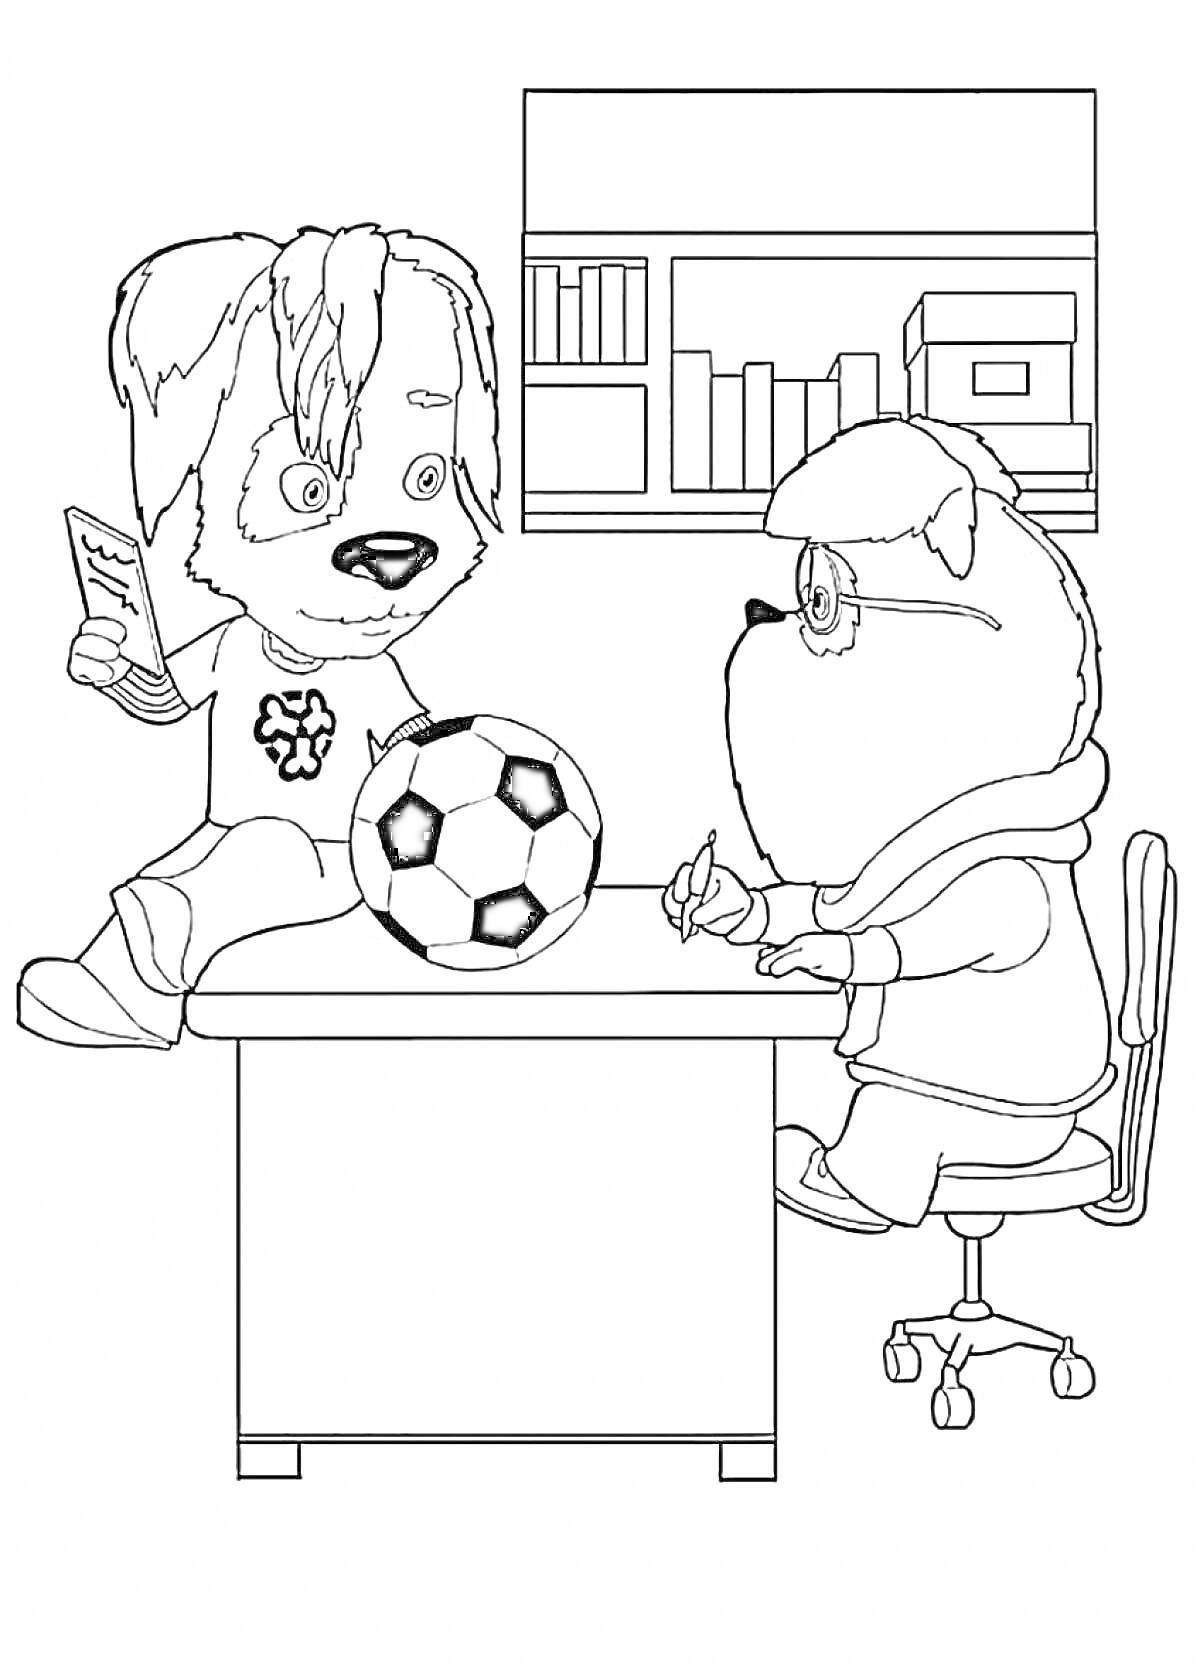 Раскраска Два персонажа барбоскины в кабинете с мячом и книгой на столе